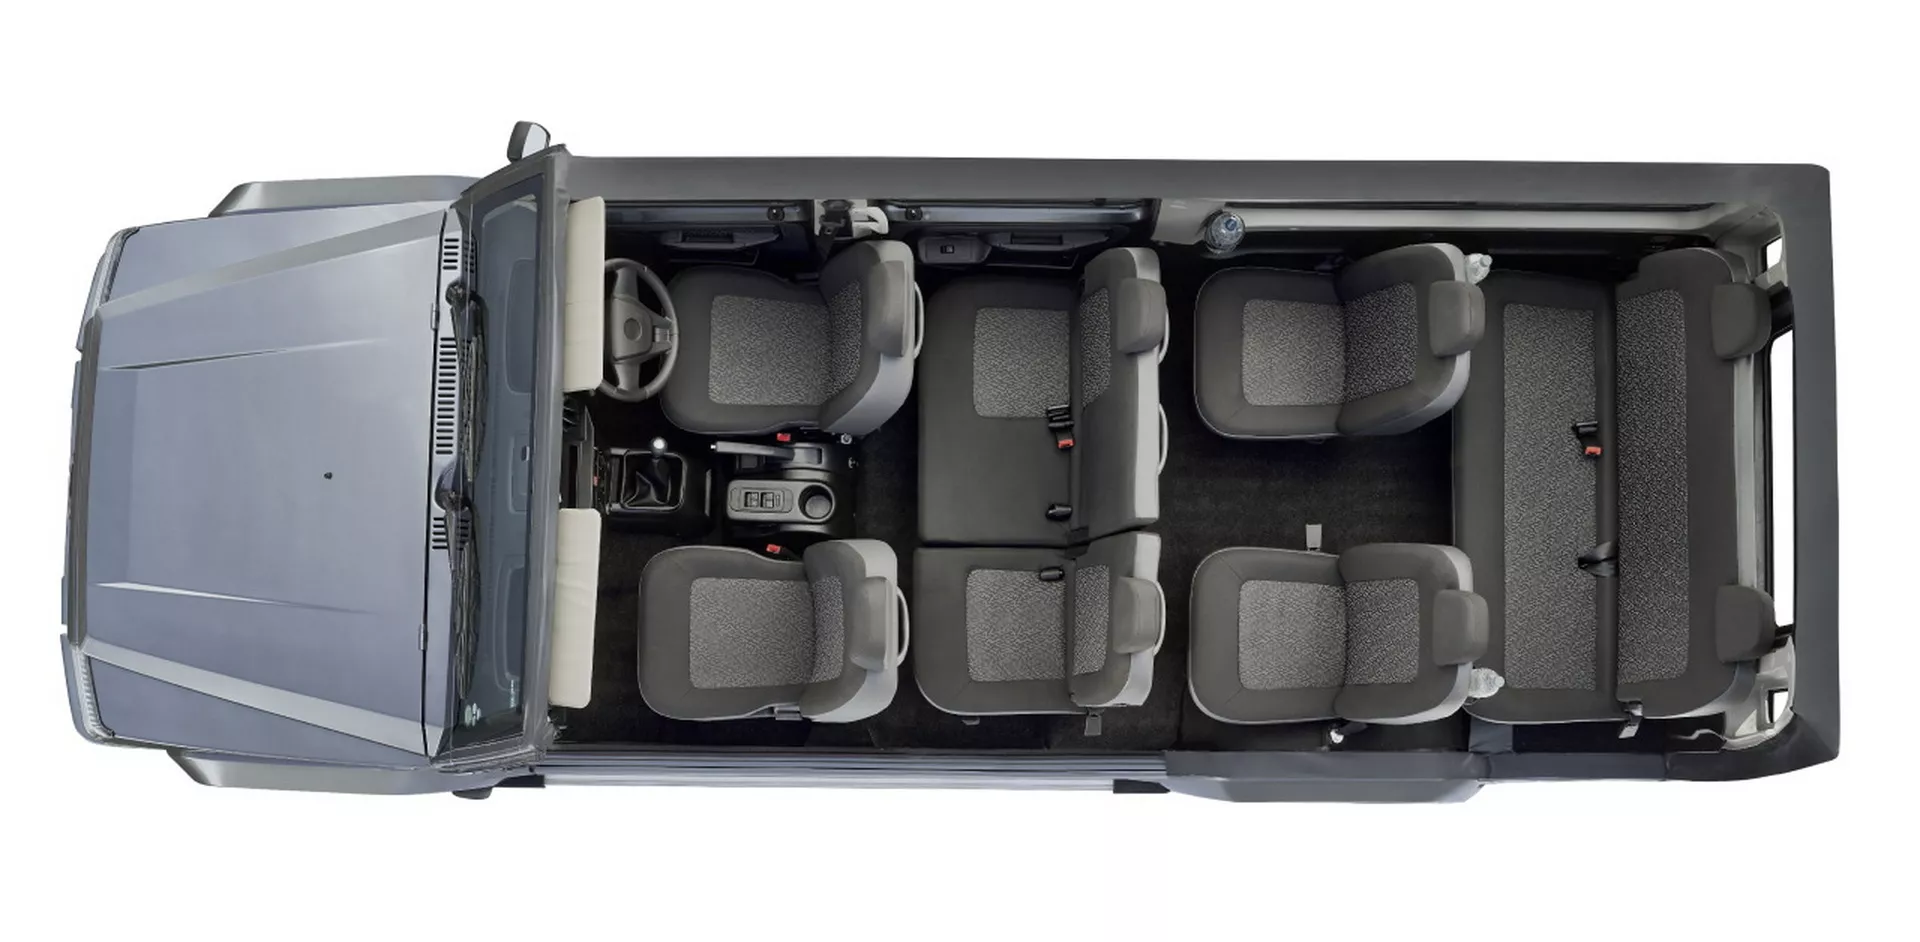 انطلاق SUV هندية عملاقة بـ 10 مقاعد وتصميم مستوحى من سيارات جي كلاس القديمة 11